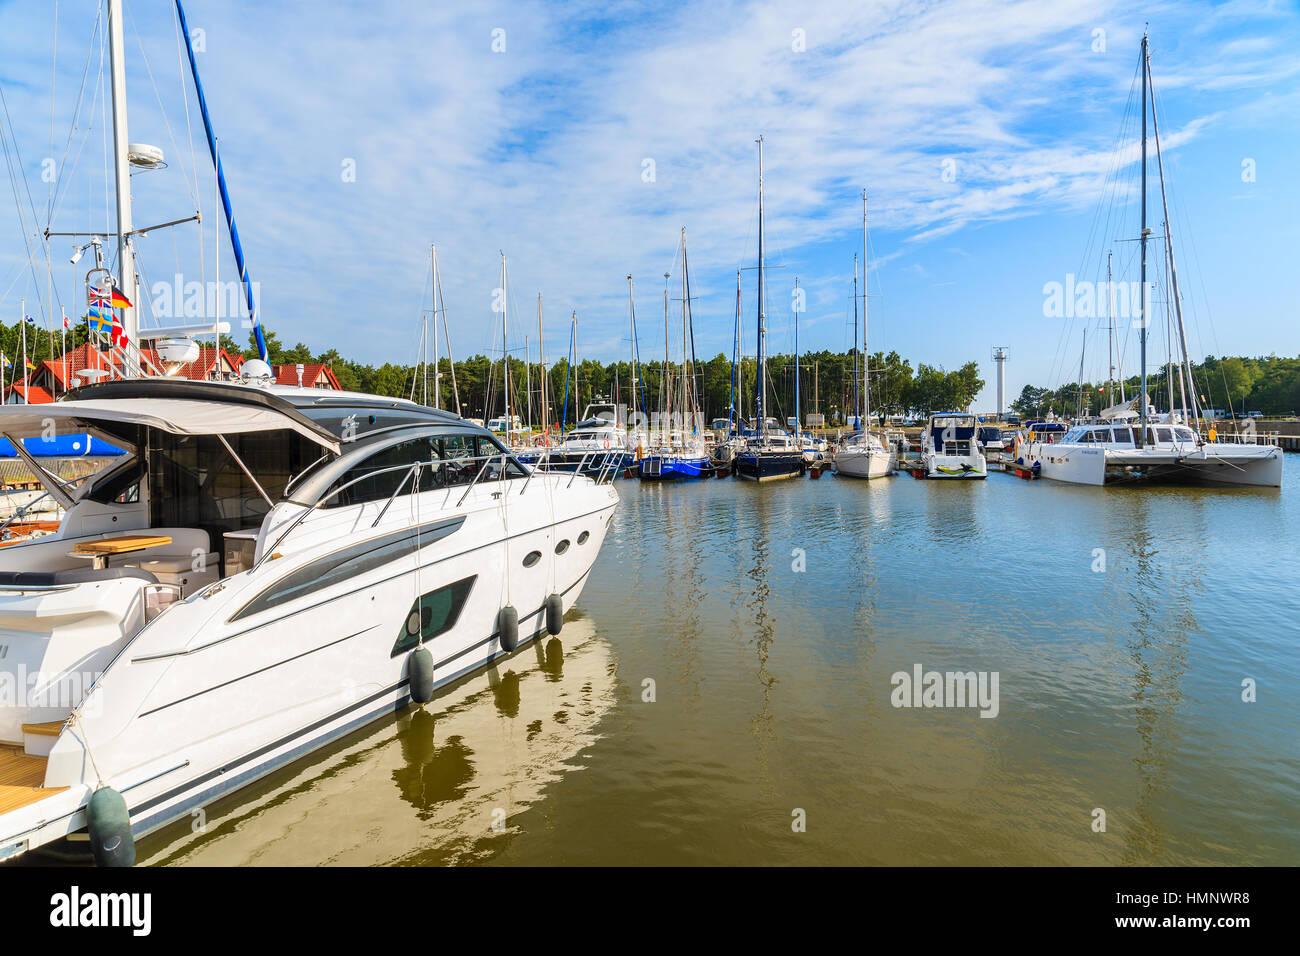 LEBA PORTA A VELA, Polonia - 23 JUN 2016: una vista del porto di vela in Leba cittadina sulla costa del Mar Baltico. Questo è uno dei più pittoreschi porti della regione. Foto Stock